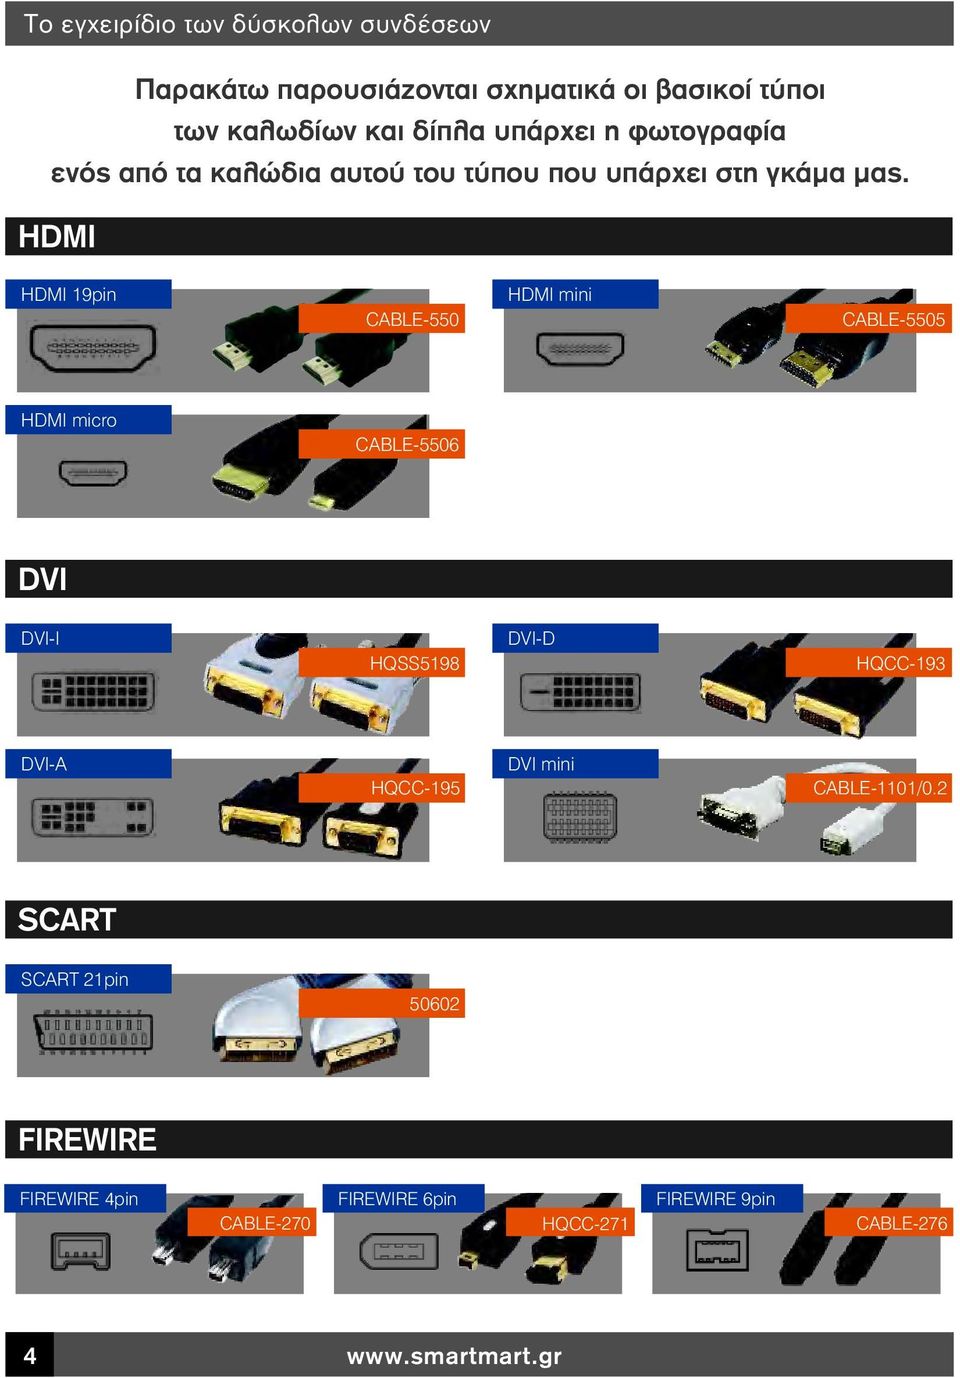 HDMI HDMI 19pin CABLE-550 HDMI mini CABLE-5505 HDMI micro CABLE-5506 DVI DVI-I HQSS5198 DVI-D HQCC-193 DVI-A